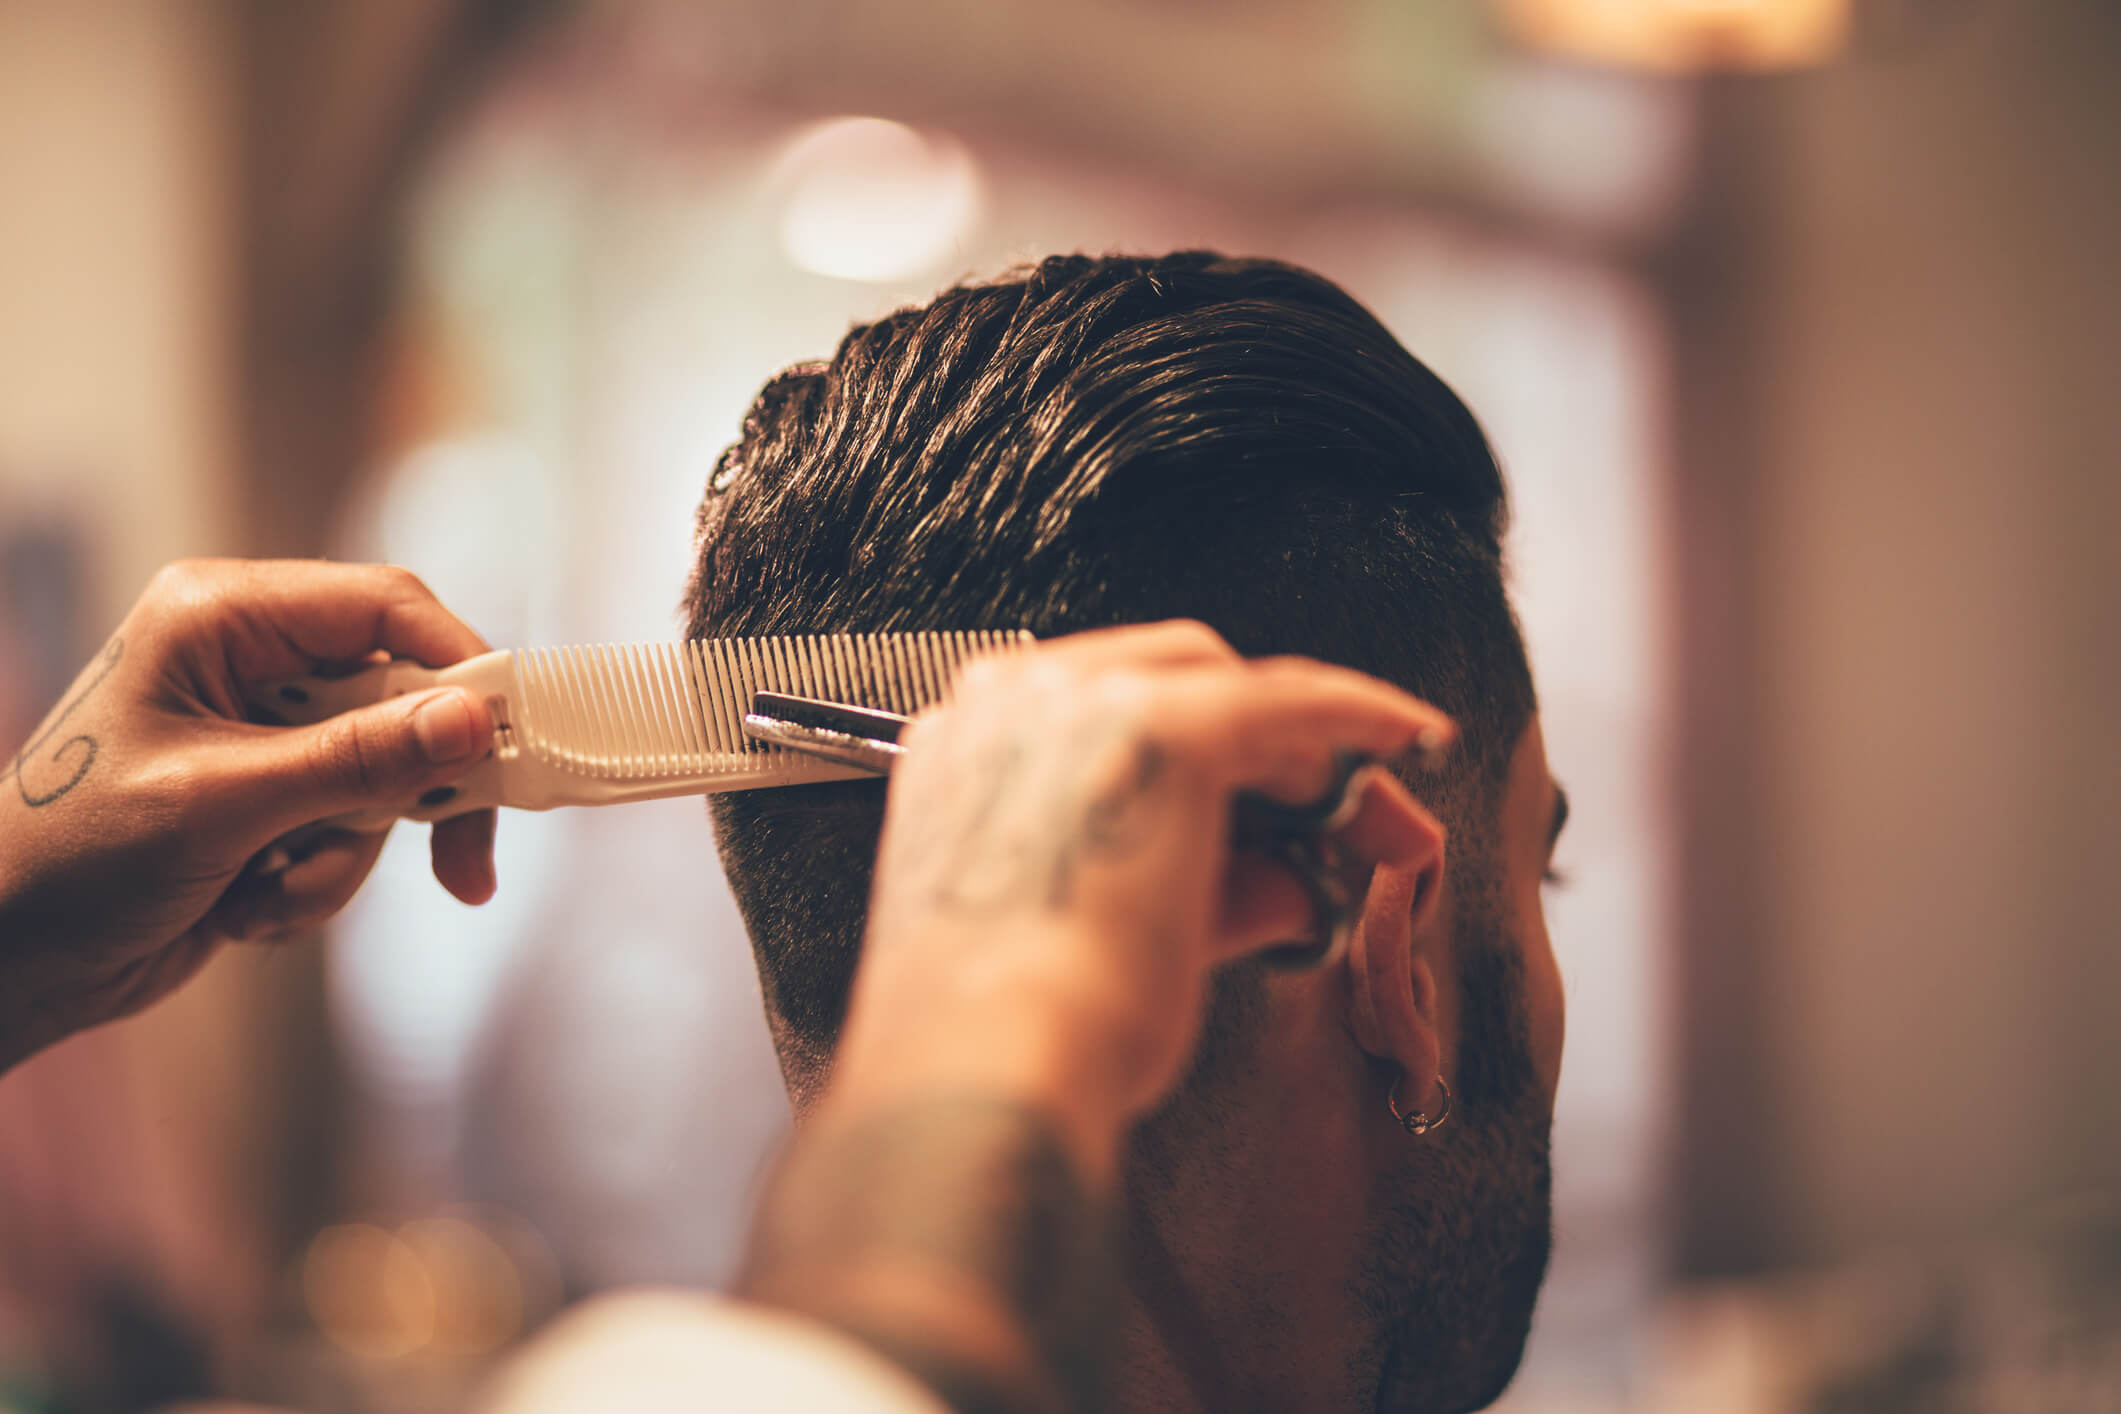 fique por dentro das maiores tendências em cortes de cabelo masculino